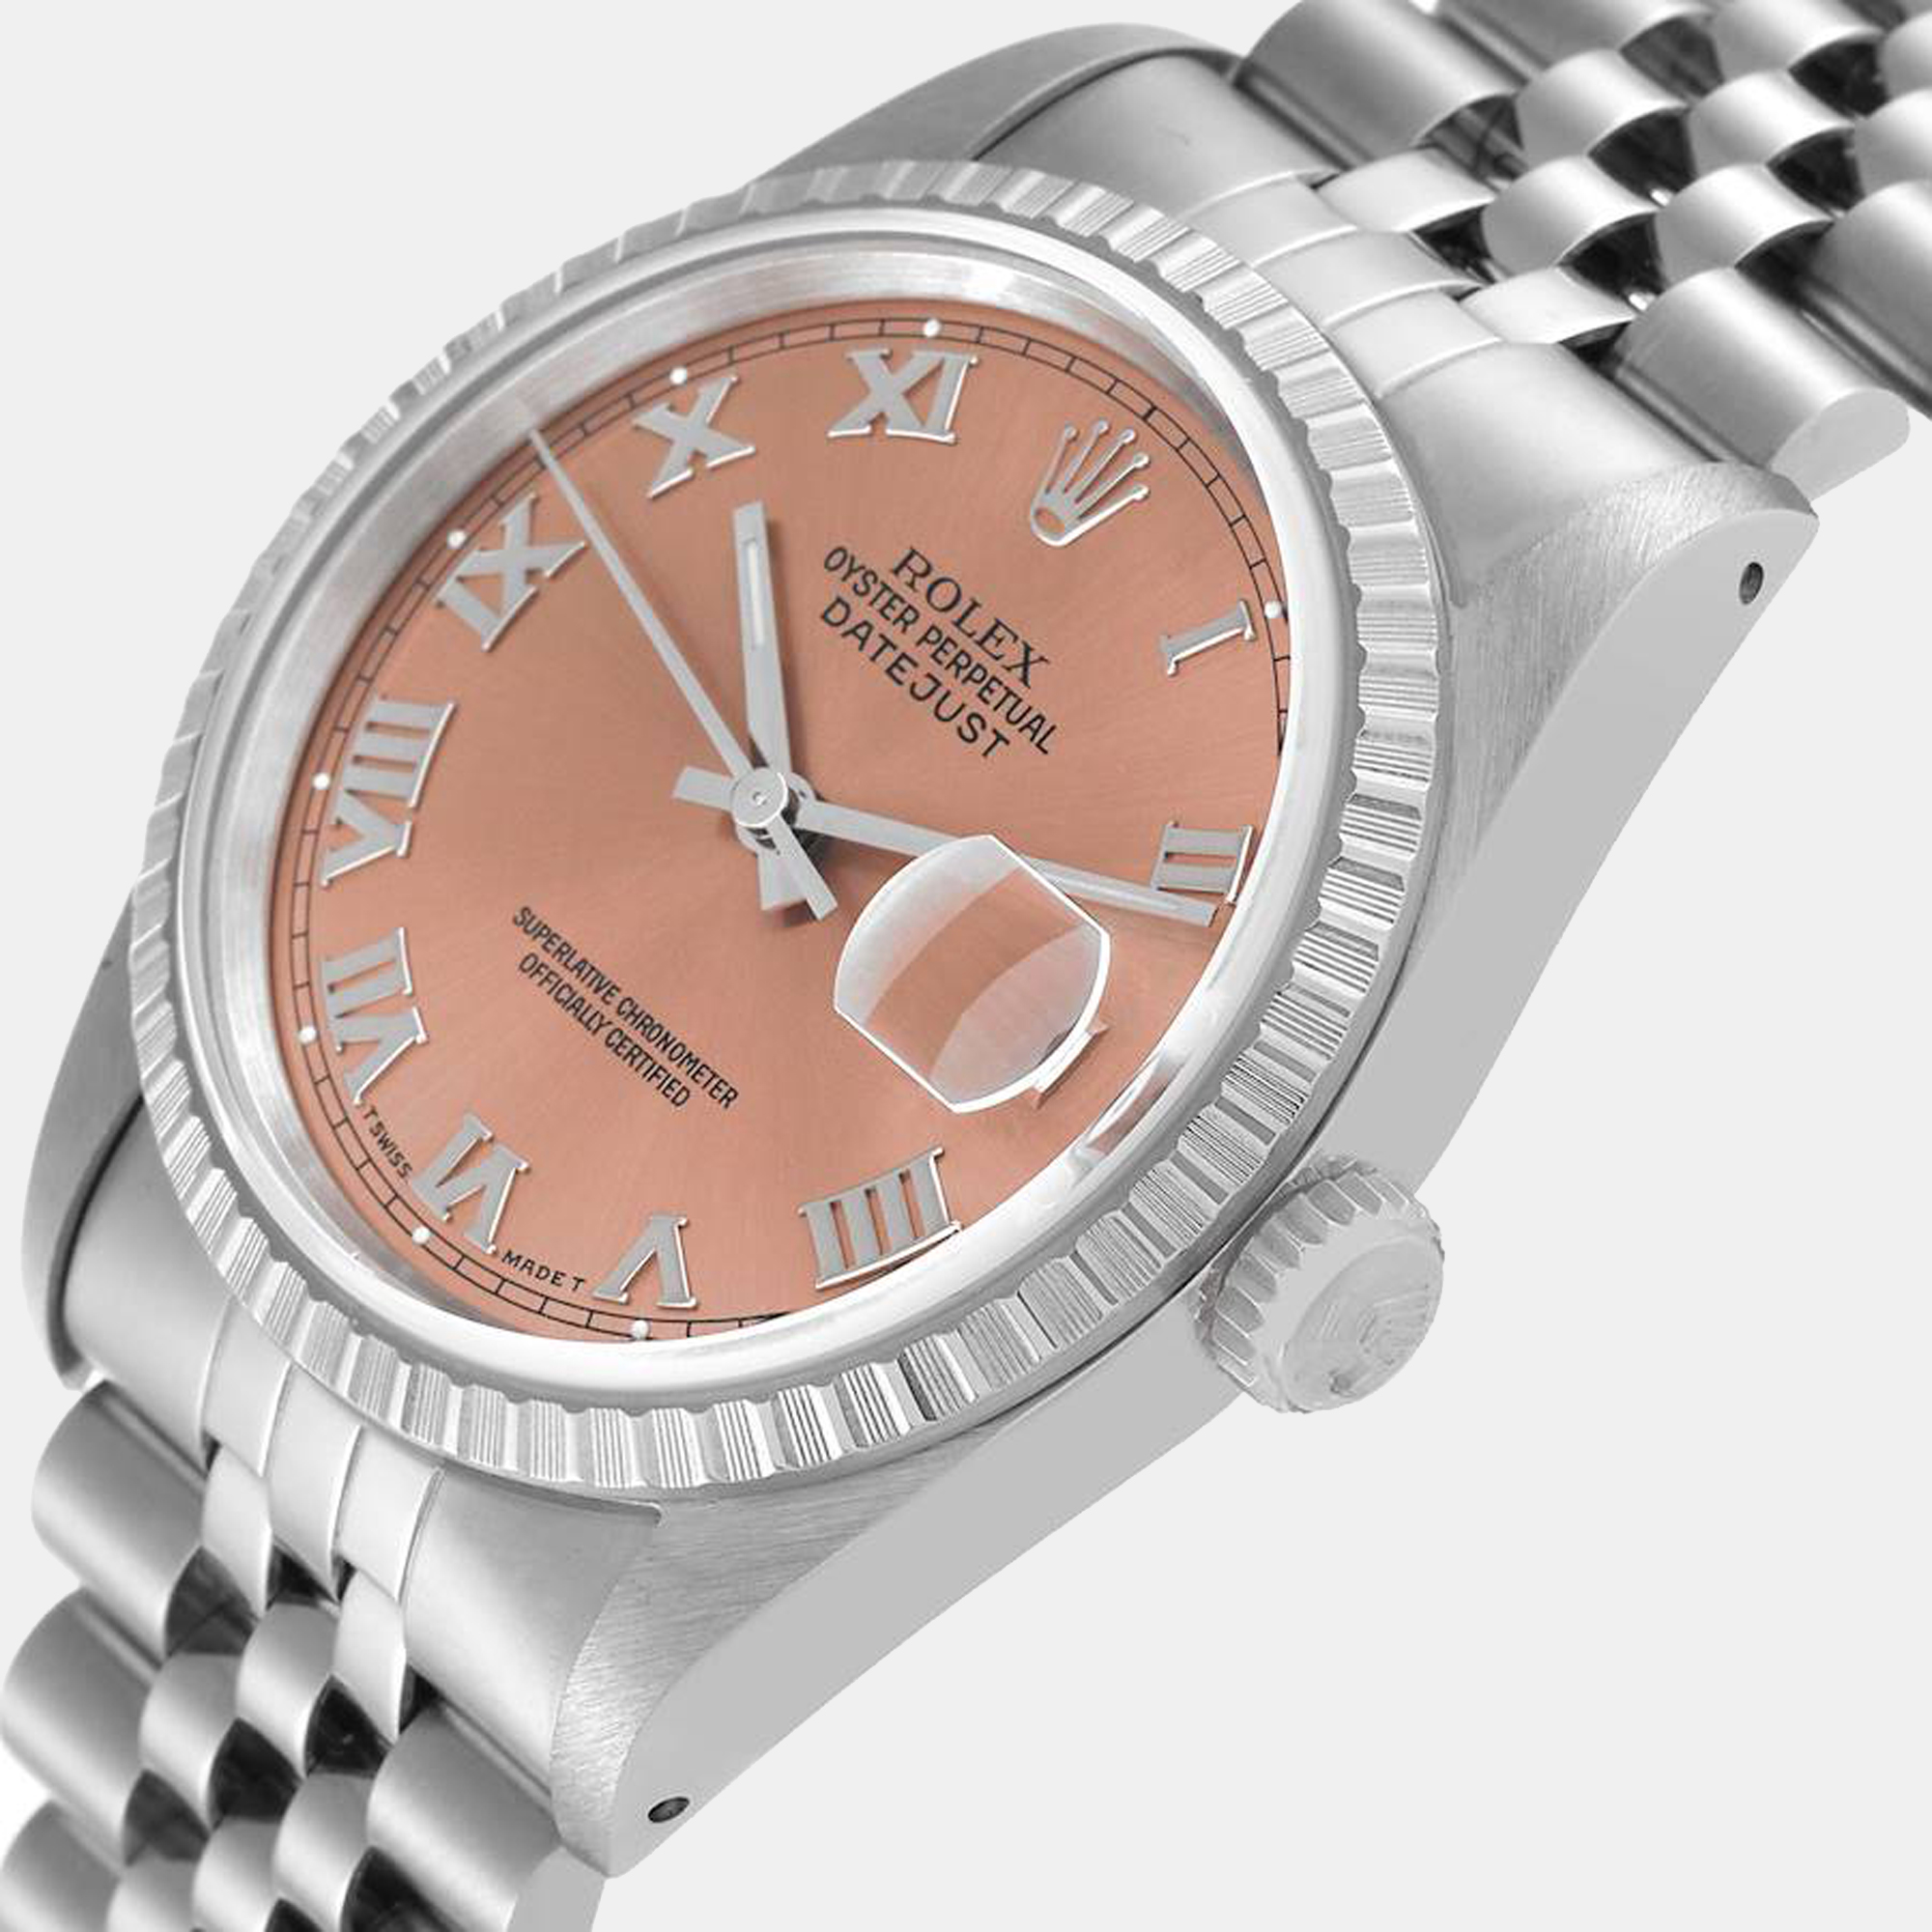 

Rolex Pink Stainless Steel Datejust 16220 Men's Wristwatch 36 mm